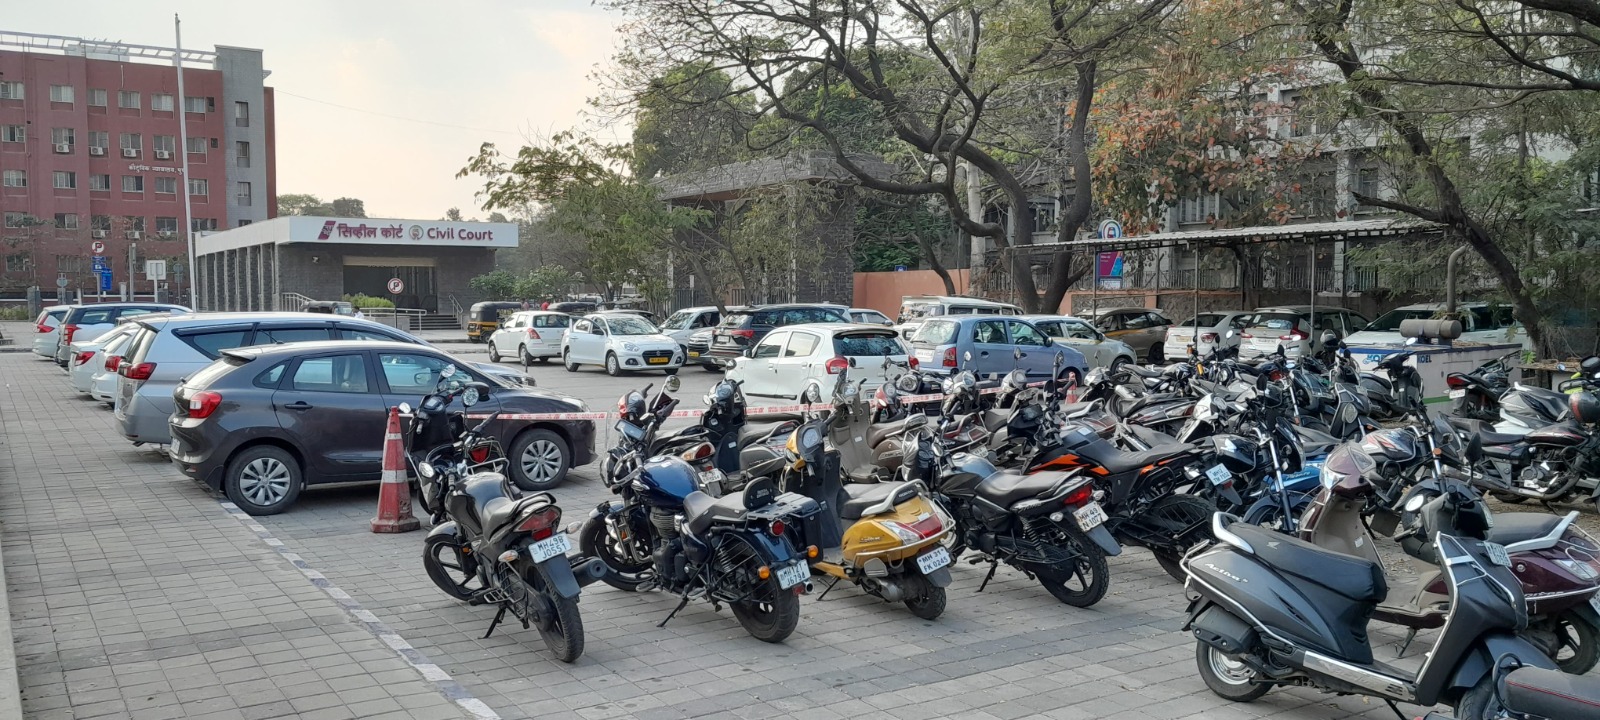 Pune Metro Station Parking | पुणे मेट्रोच्या ८ स्थानकांवर पार्किंगची सुविधा लवकरच उपलब्ध होणार